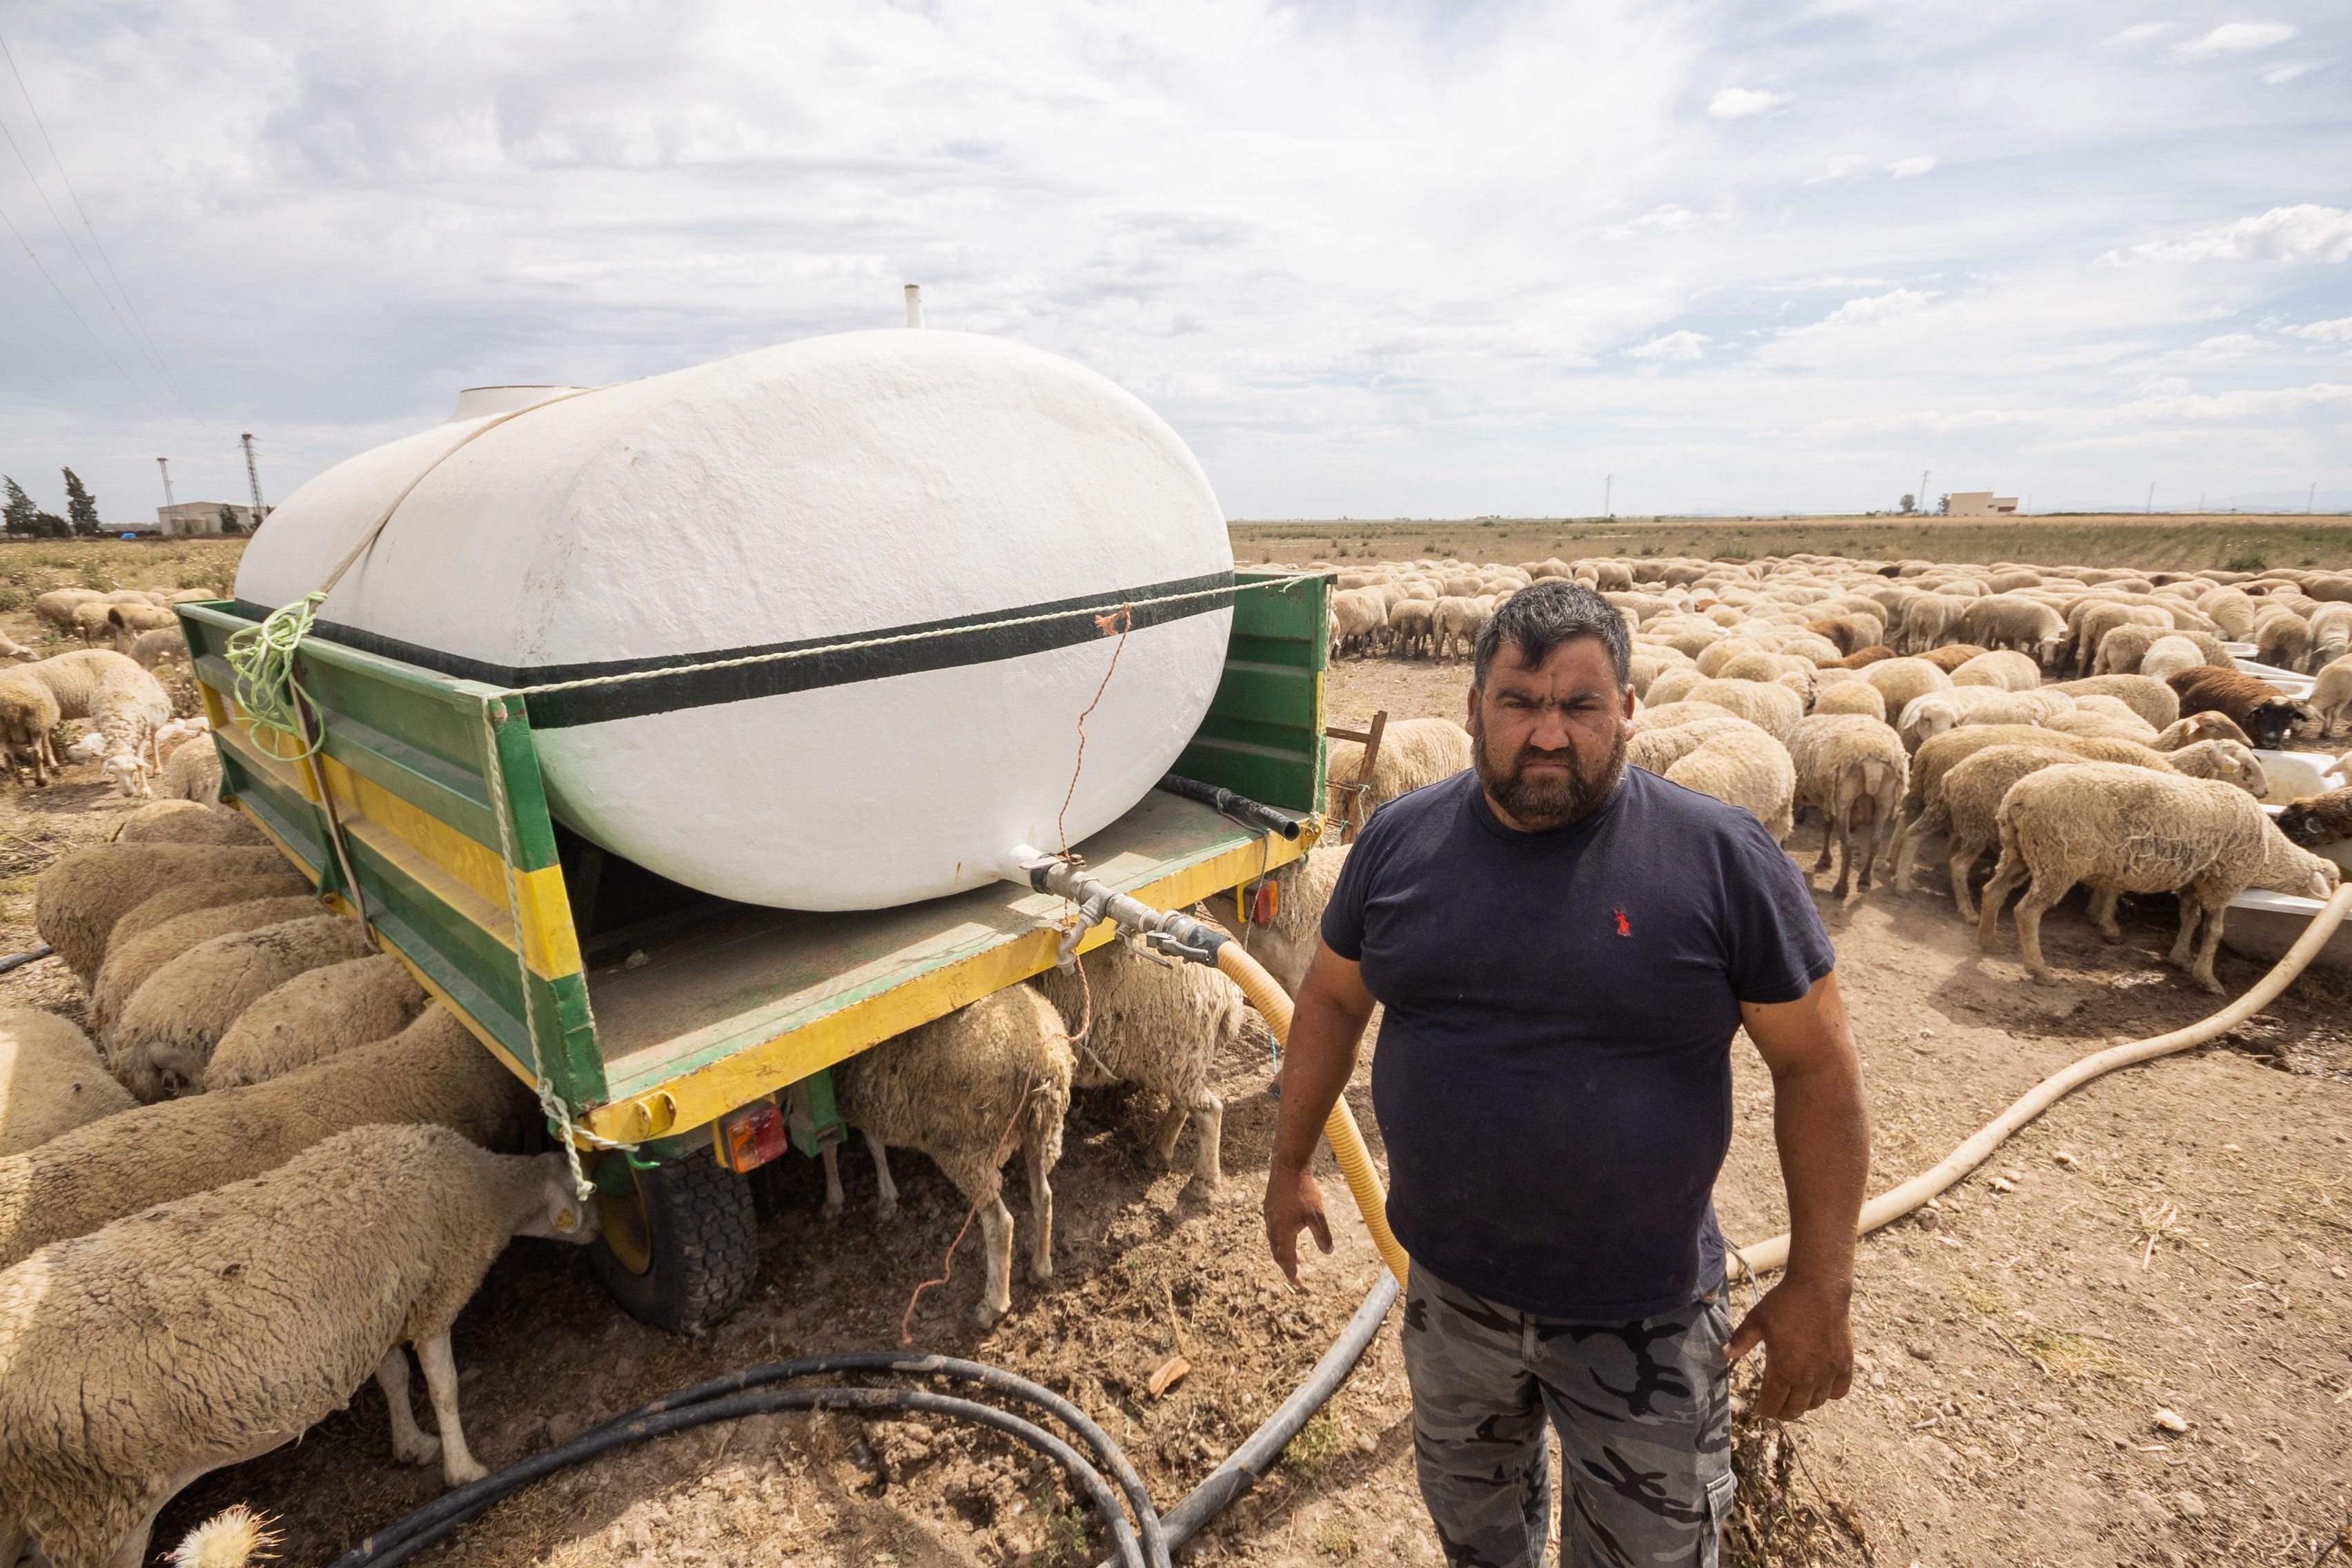 Sequía en la cuenca del Guadalquivir. Un pastor lebrijano, junto a su rebaño, sediento y aprovechando cosechas perdidas para sobrevivir.